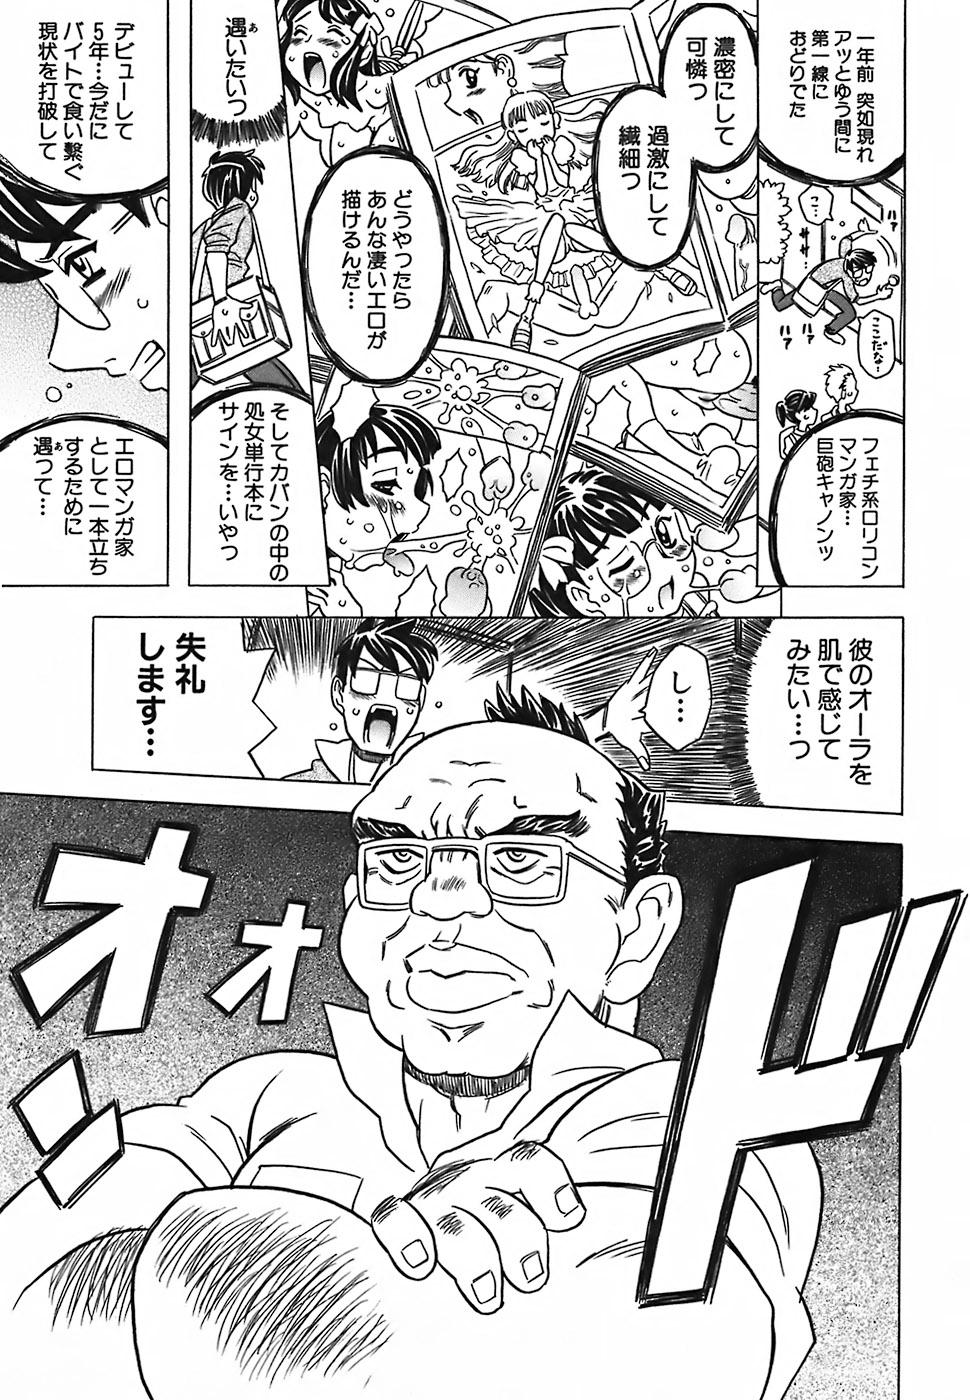 Leite Cannon Sensei Tobashisugi Putaria - Page 11